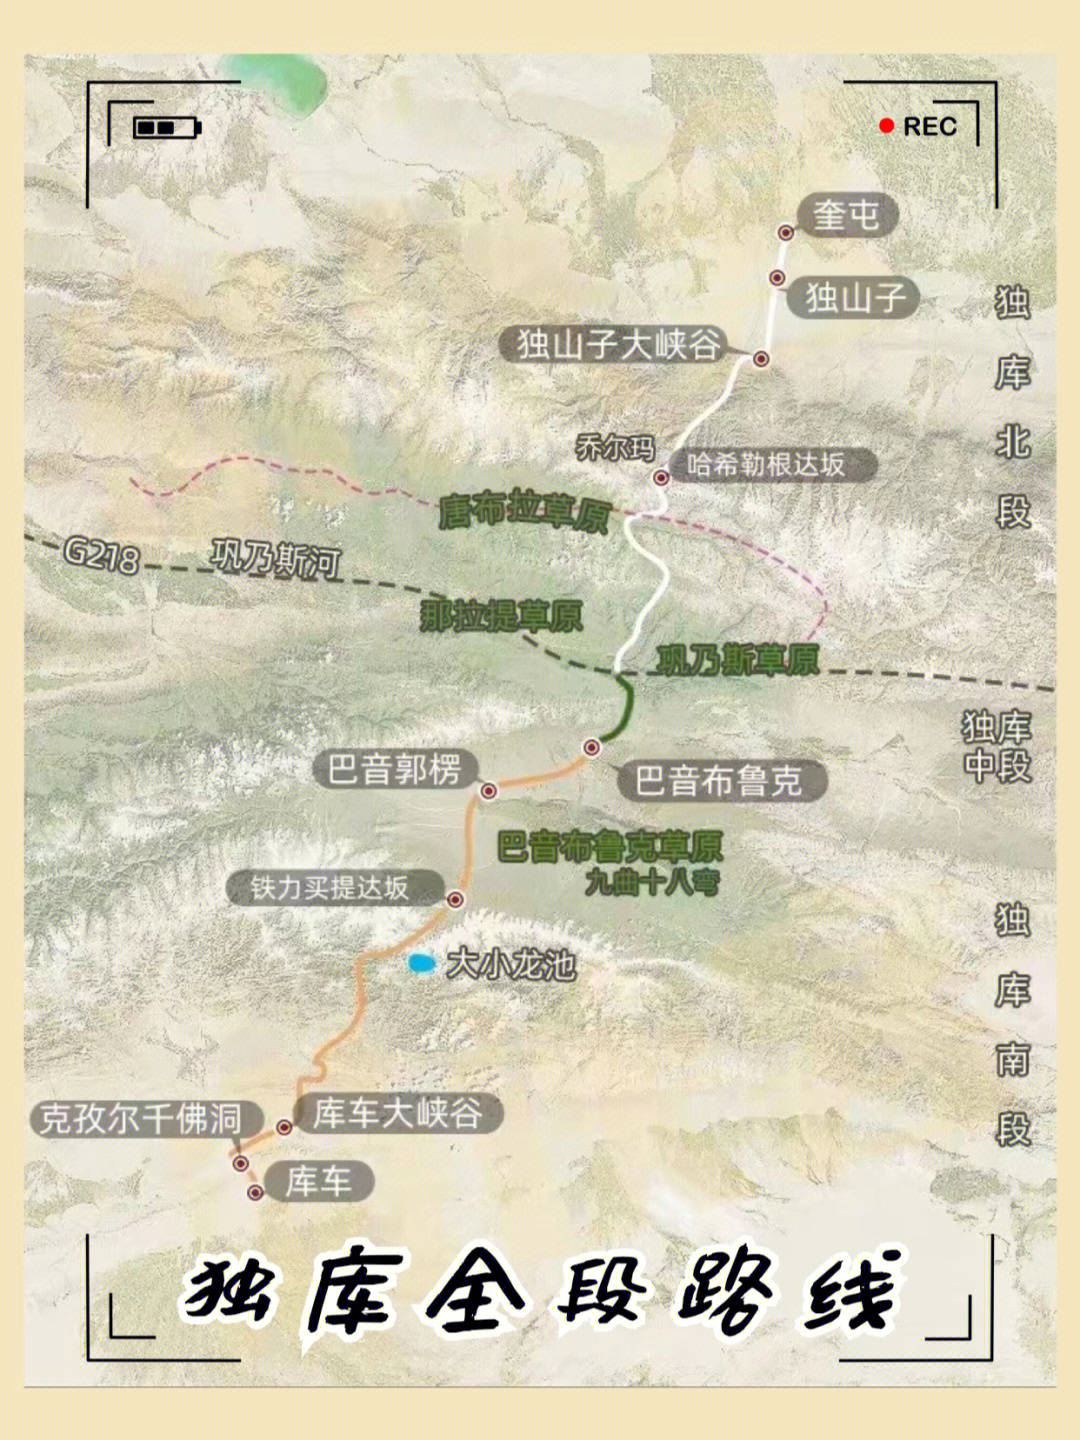 天山神秘大峡谷地图图片